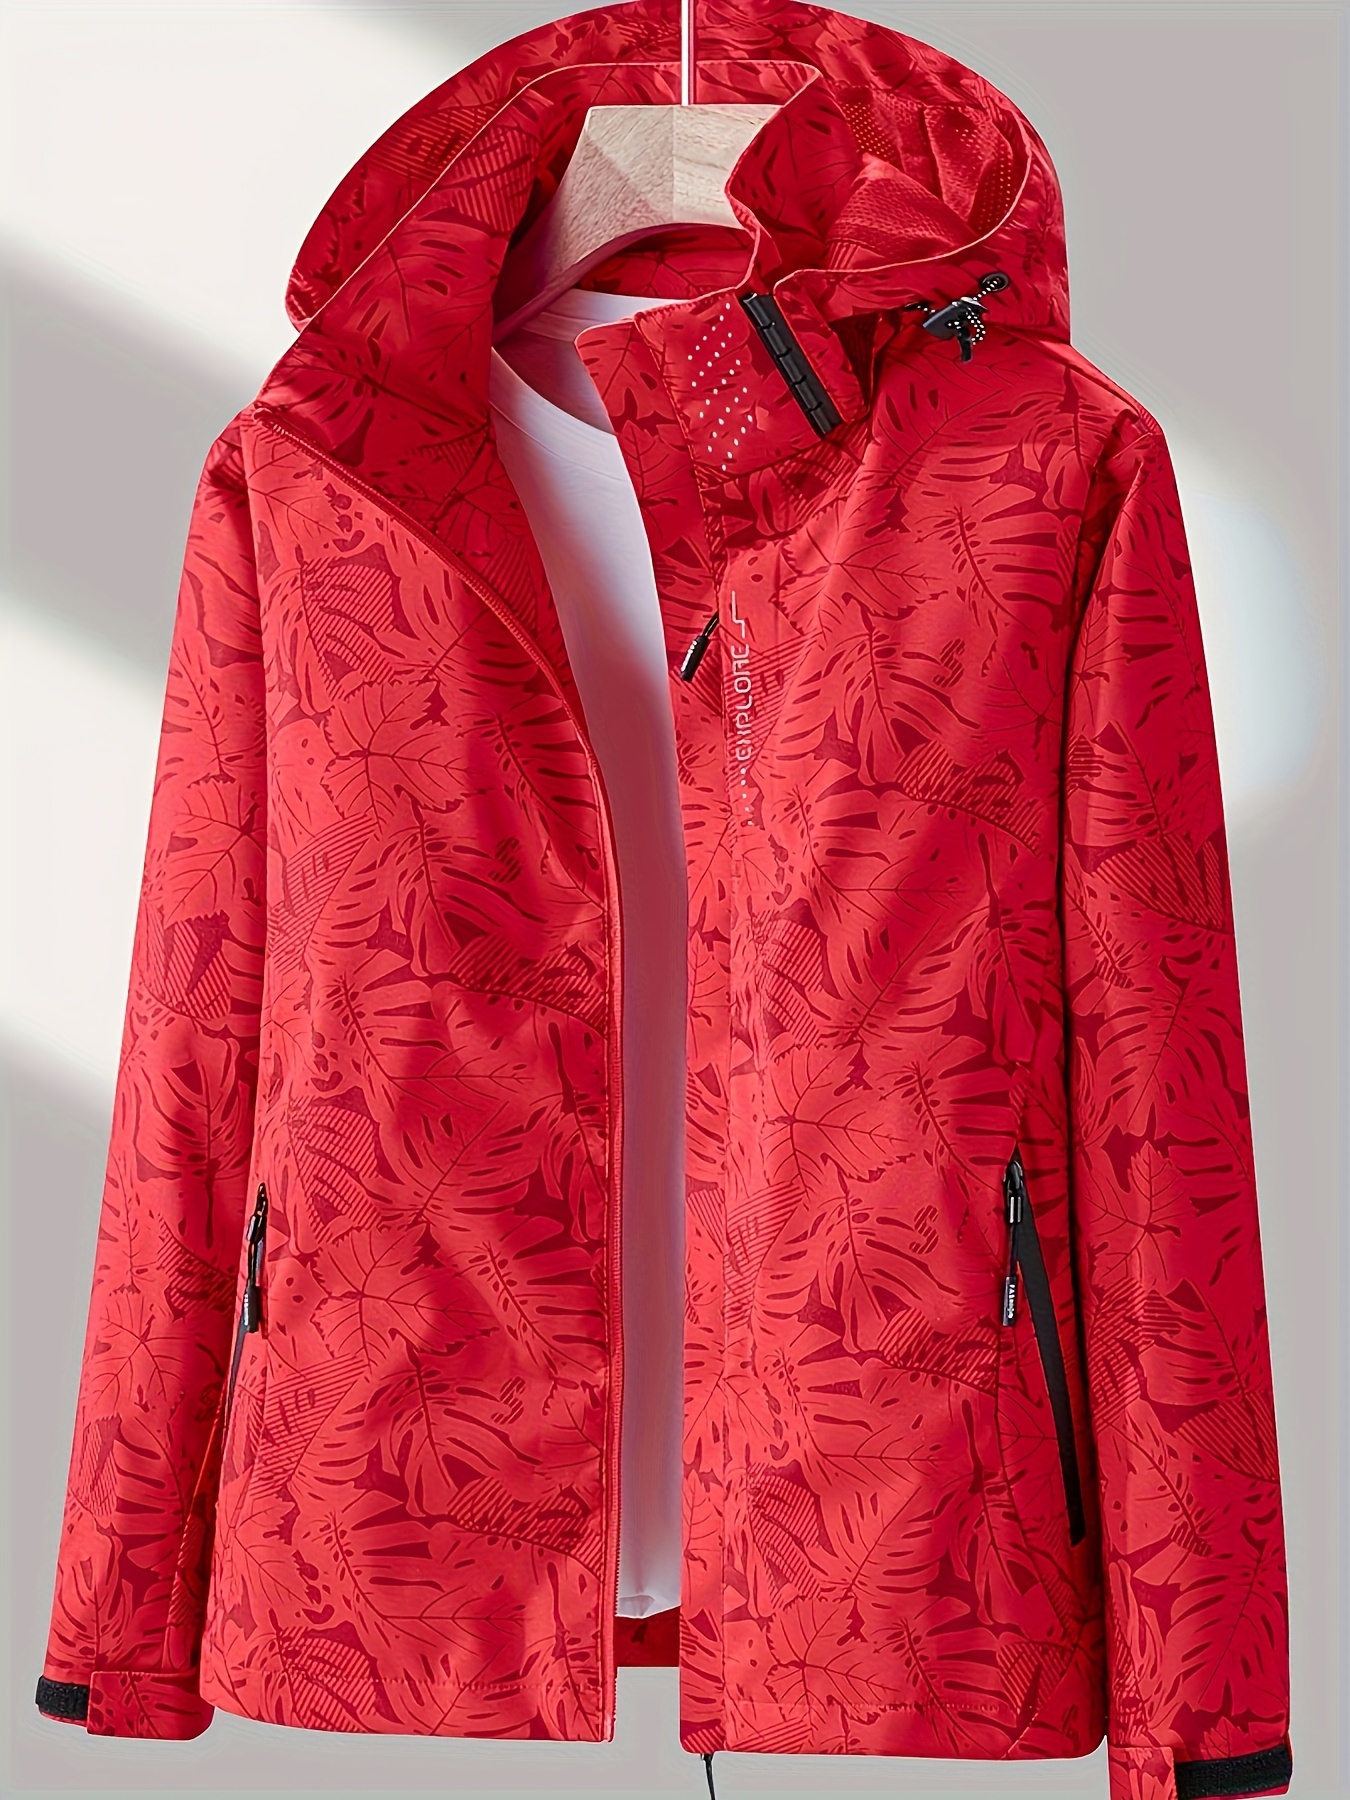 Женская камуфляжная куртка для активного отдыха: ветрозащитная и непромокаемая, со съемным капюшоном — идеально подходит для приключений на природе!